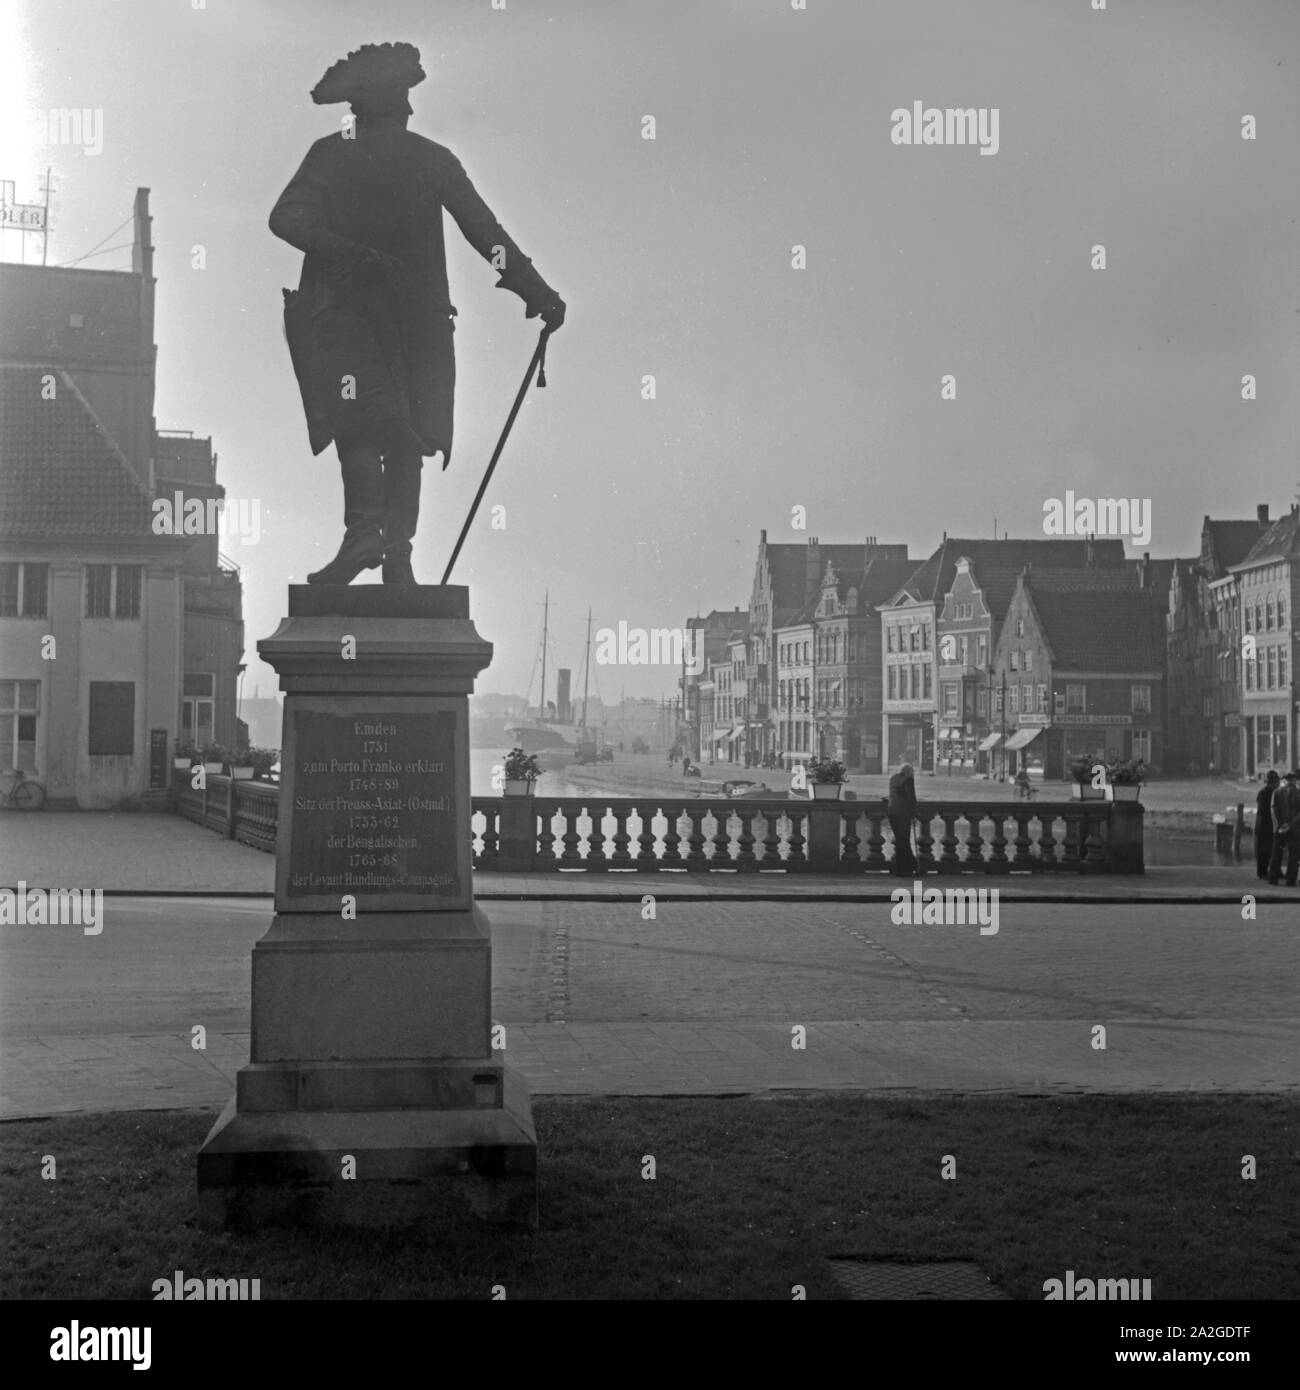 Denkmal am Delft a Emden in Ostfriesland, Deutschland 1930er Jahre. Monumento a Delft street a Emden in Frisia orientale, Germania 1930s. Foto Stock